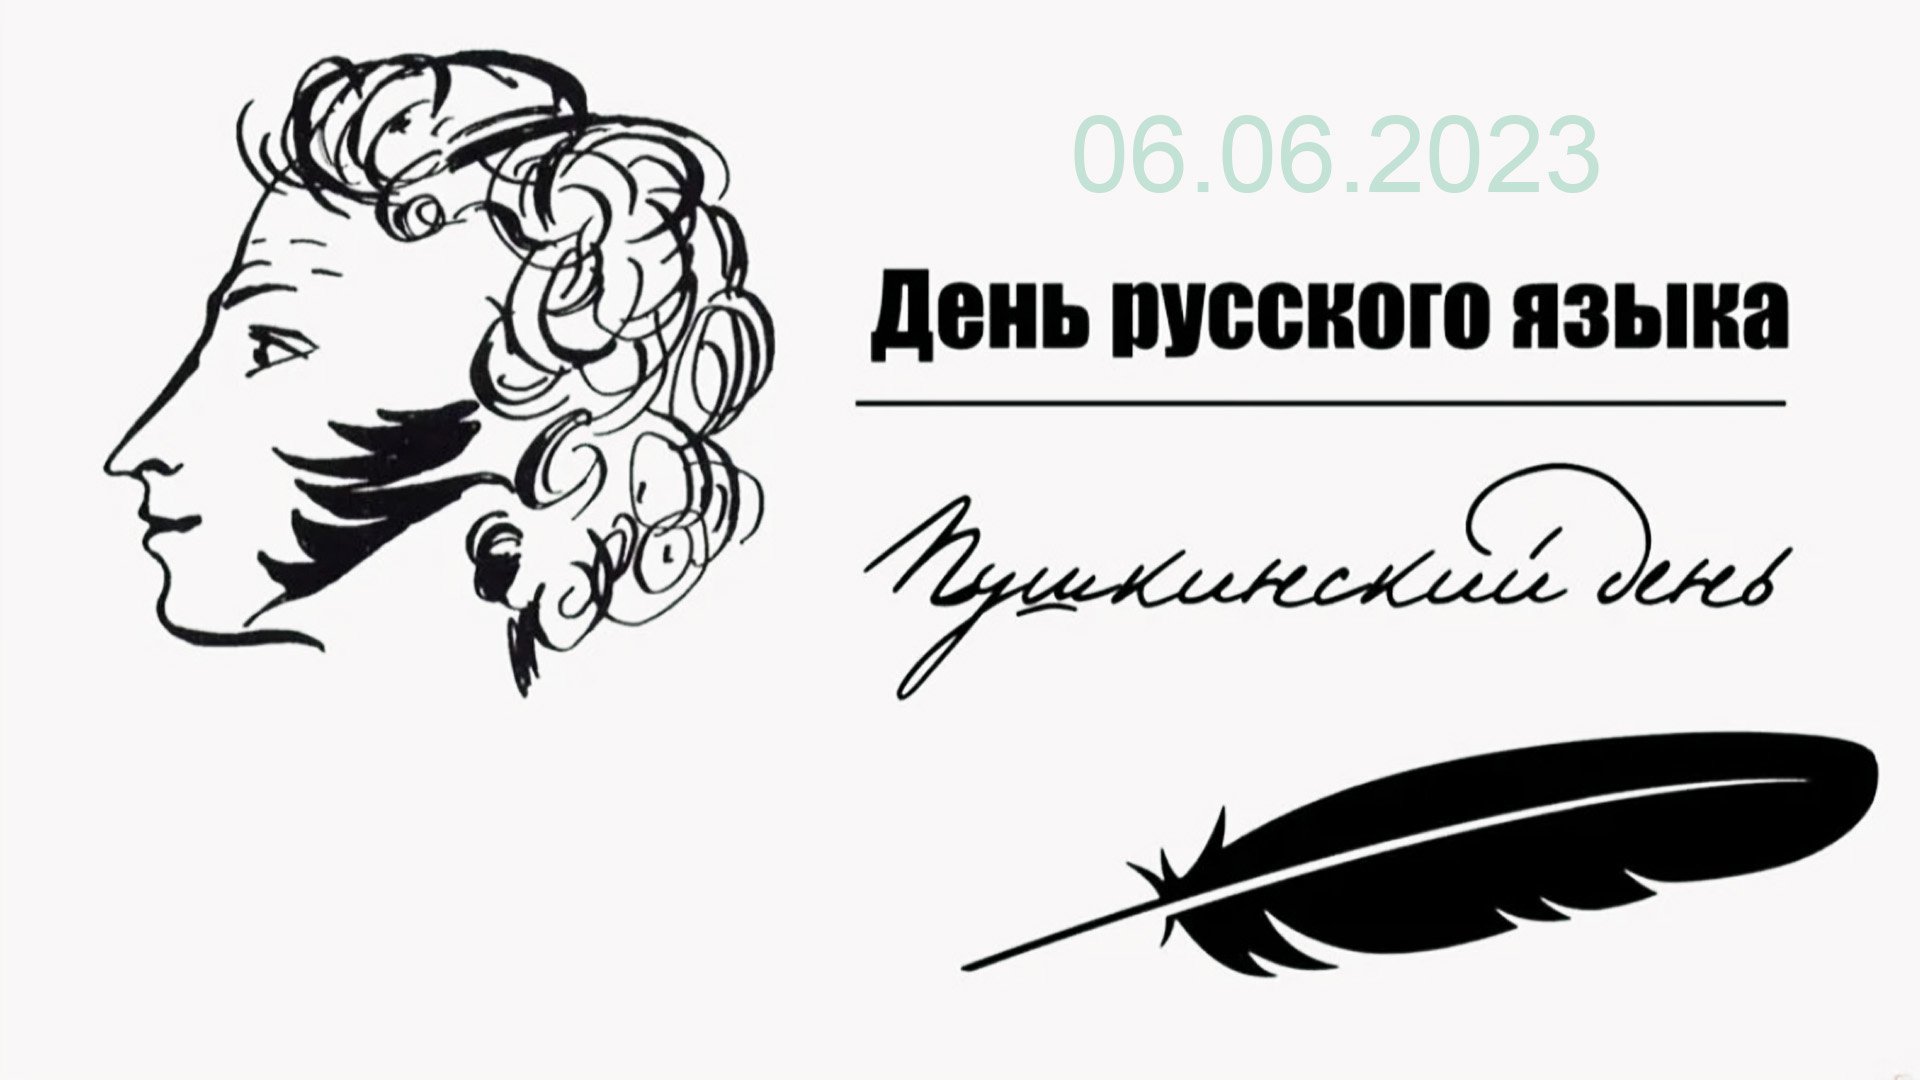 пушкинский день